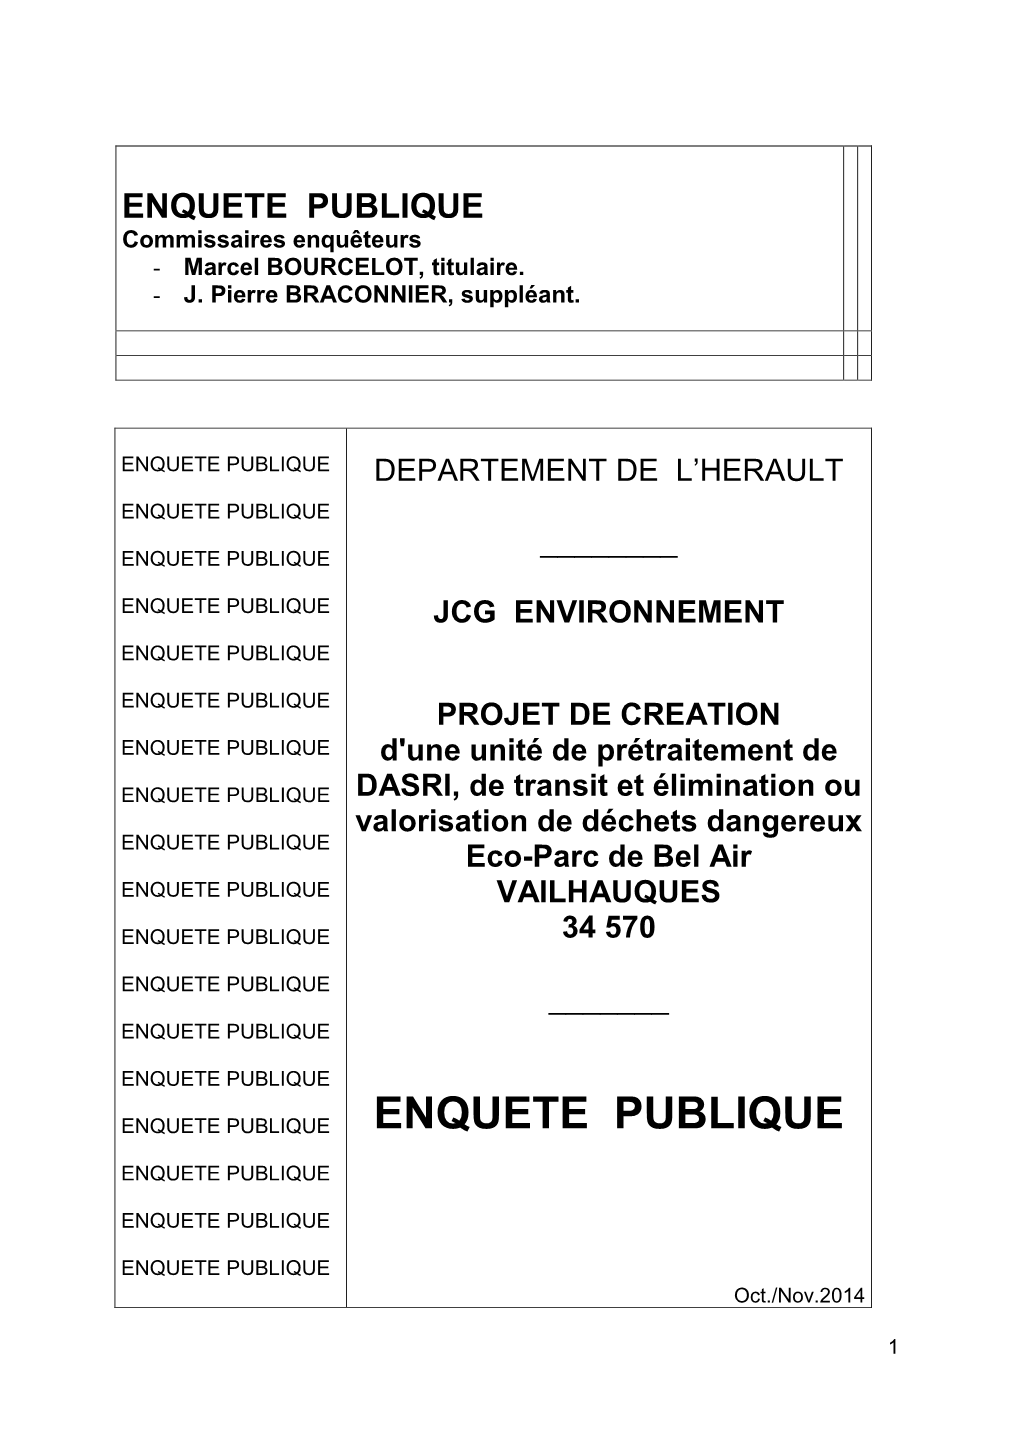 ENQUETE PUBLIQUE Commissaires Enquêteurs - Marcel BOURCELOT, Titulaire